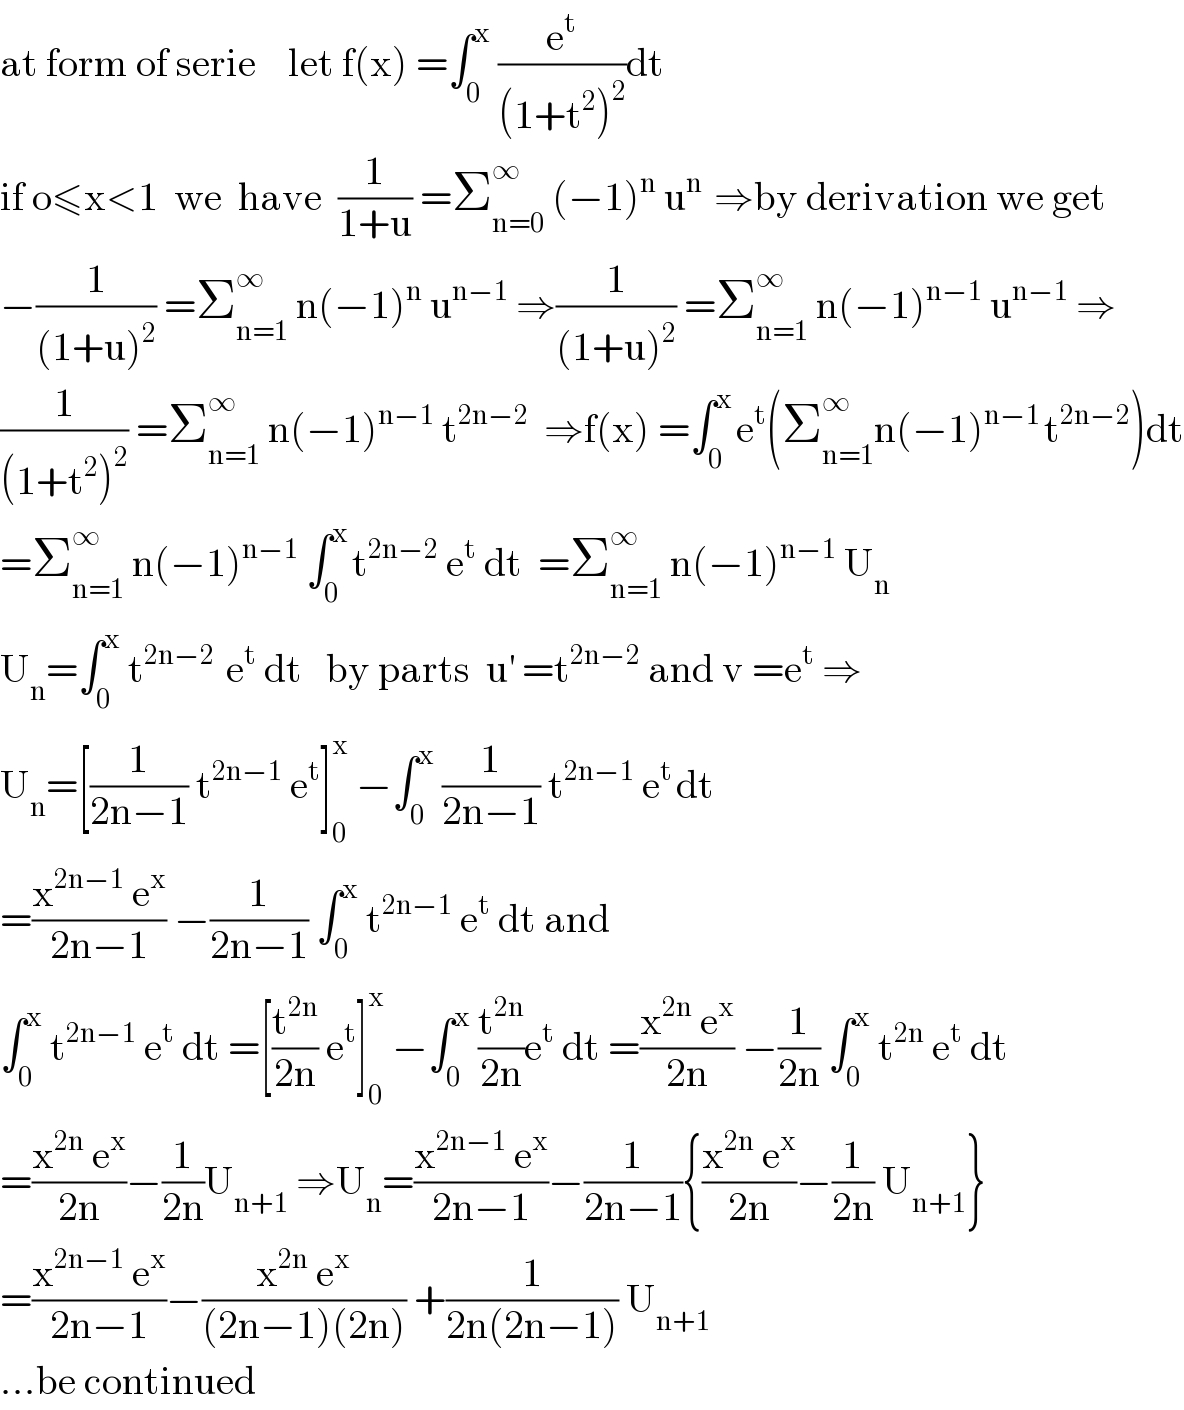 at form of serie    let f(x) =∫_0 ^x  (e^t /((1+t^2 )^2 ))dt  if o≤x<1  we  have  (1/(1+u)) =Σ_(n=0) ^∞  (−1)^n  u^(n )  ⇒by derivation we get  −(1/((1+u)^2 )) =Σ_(n=1) ^∞  n(−1)^n  u^(n−1)  ⇒(1/((1+u)^2 )) =Σ_(n=1) ^∞  n(−1)^(n−1)  u^(n−1)  ⇒  (1/((1+t^2 )^2 )) =Σ_(n=1) ^∞  n(−1)^(n−1)  t^(2n−2)   ⇒f(x) =∫_0 ^(x ) e^t (Σ_(n=1) ^(∞ ) n(−1)^(n−1 ) t^(2n−2) )dt  =Σ_(n=1) ^∞  n(−1)^(n−1)  ∫_0 ^(x ) t^(2n−2)  e^t  dt  =Σ_(n=1) ^∞  n(−1)^(n−1)  U_n   U_n =∫_0 ^x  t^(2n−2 )  e^t  dt   by parts  u^′  =t^(2n−2)  and v =e^t  ⇒  U_n =[(1/(2n−1)) t^(2n−1)  e^t ]_0 ^x  −∫_0 ^x  (1/(2n−1)) t^(2n−1)  e^(t ) dt  =((x^(2n−1)  e^x )/(2n−1)) −(1/(2n−1)) ∫_0 ^x  t^(2n−1)  e^t  dt and  ∫_0 ^x  t^(2n−1)  e^t  dt =[(t^(2n) /(2n)) e^t ]_0 ^x  −∫_0 ^x  (t^(2n) /(2n))e^t  dt =((x^(2n)  e^x )/(2n)) −(1/(2n)) ∫_0 ^x  t^(2n)  e^t  dt  =((x^(2n)  e^x )/(2n))−(1/(2n))U_(n+1)  ⇒U_n =((x^(2n−1)  e^x )/(2n−1))−(1/(2n−1)){((x^(2n)  e^x )/(2n))−(1/(2n)) U_(n+1) }  =((x^(2n−1)  e^x )/(2n−1))−((x^(2n)  e^x )/((2n−1)(2n))) +(1/(2n(2n−1))) U_(n+1)   ...be continued  